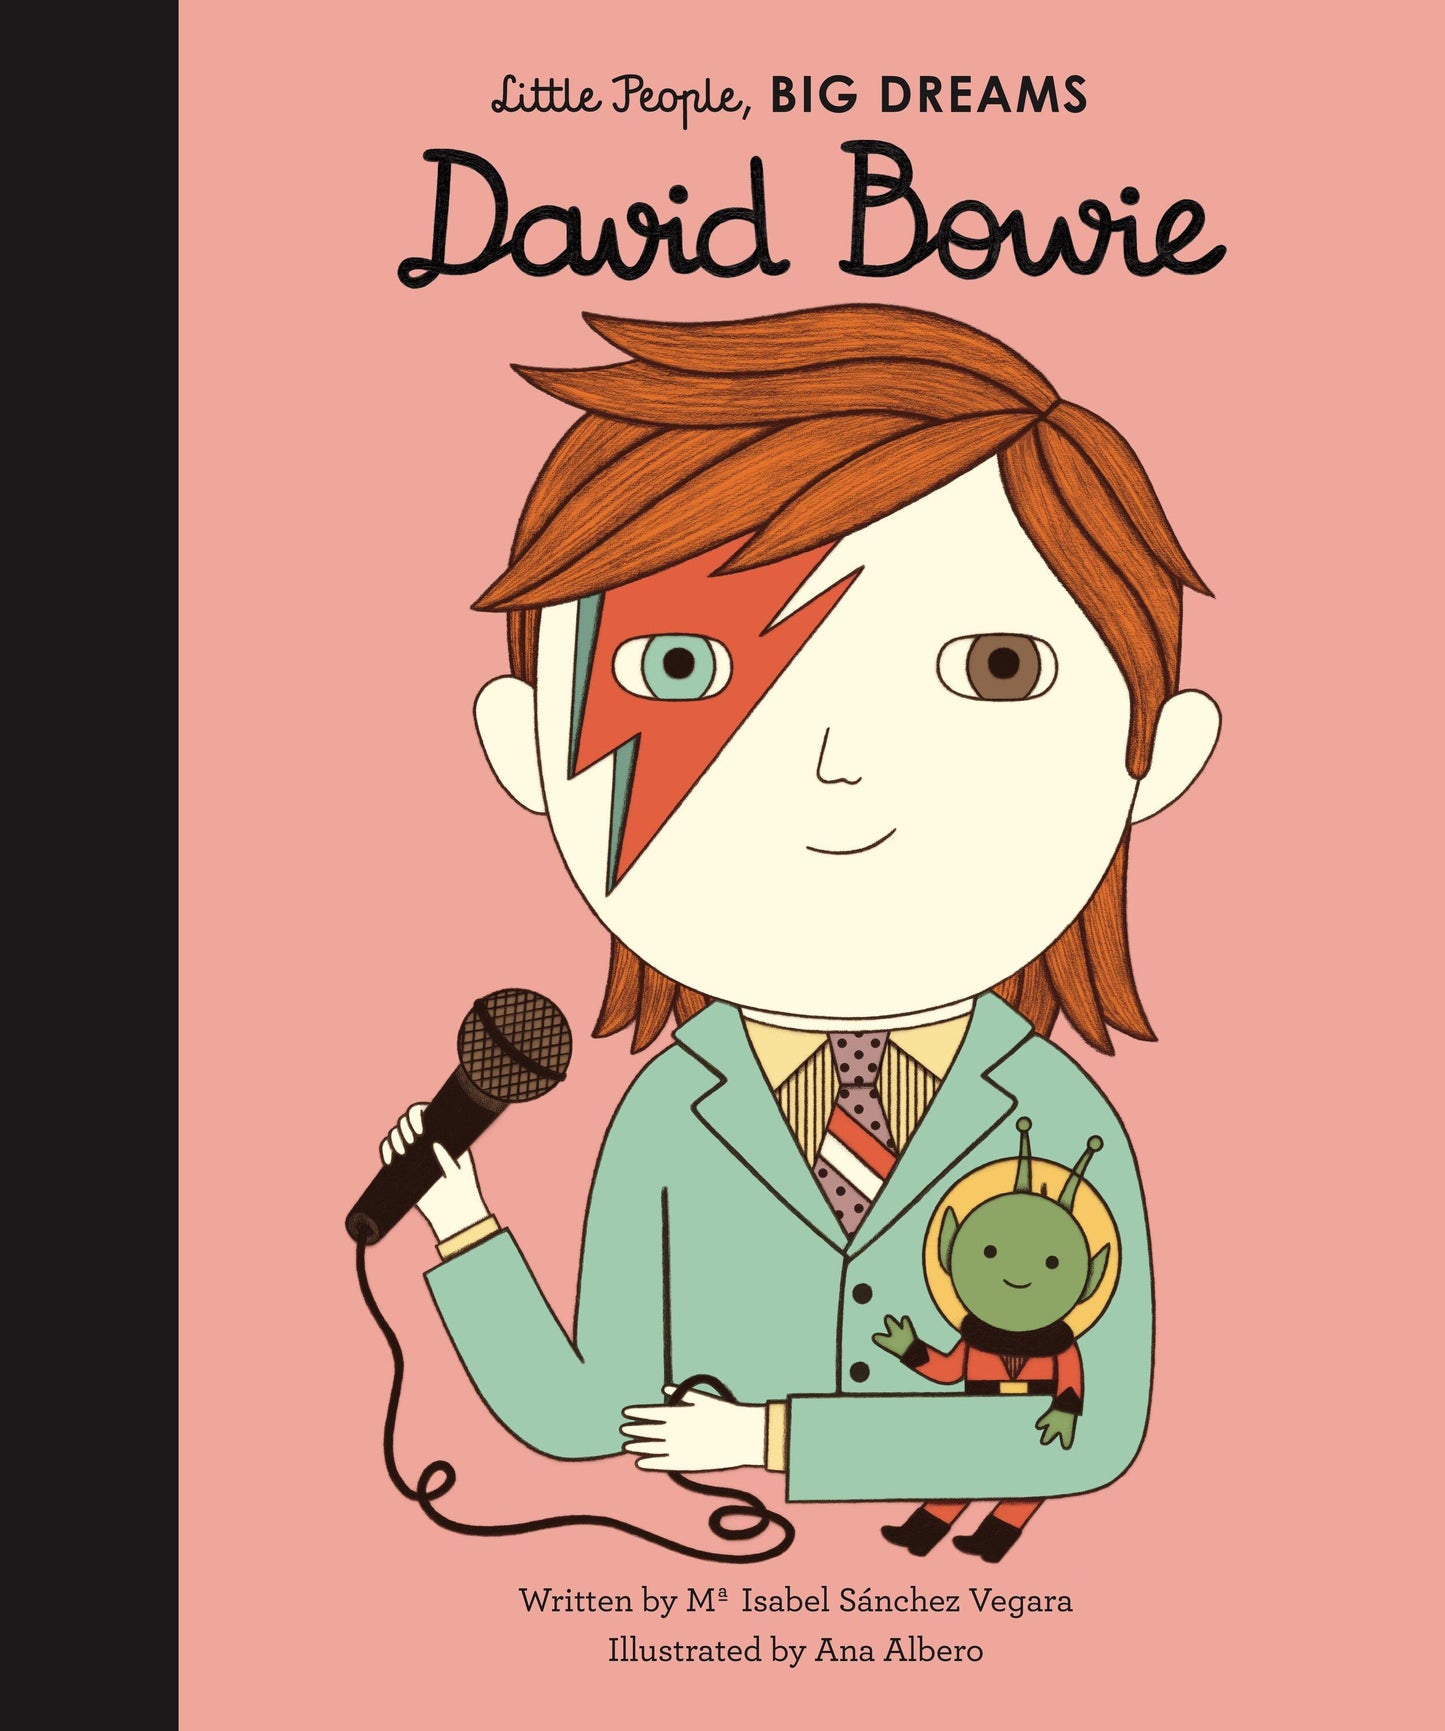 Little people David Bowie